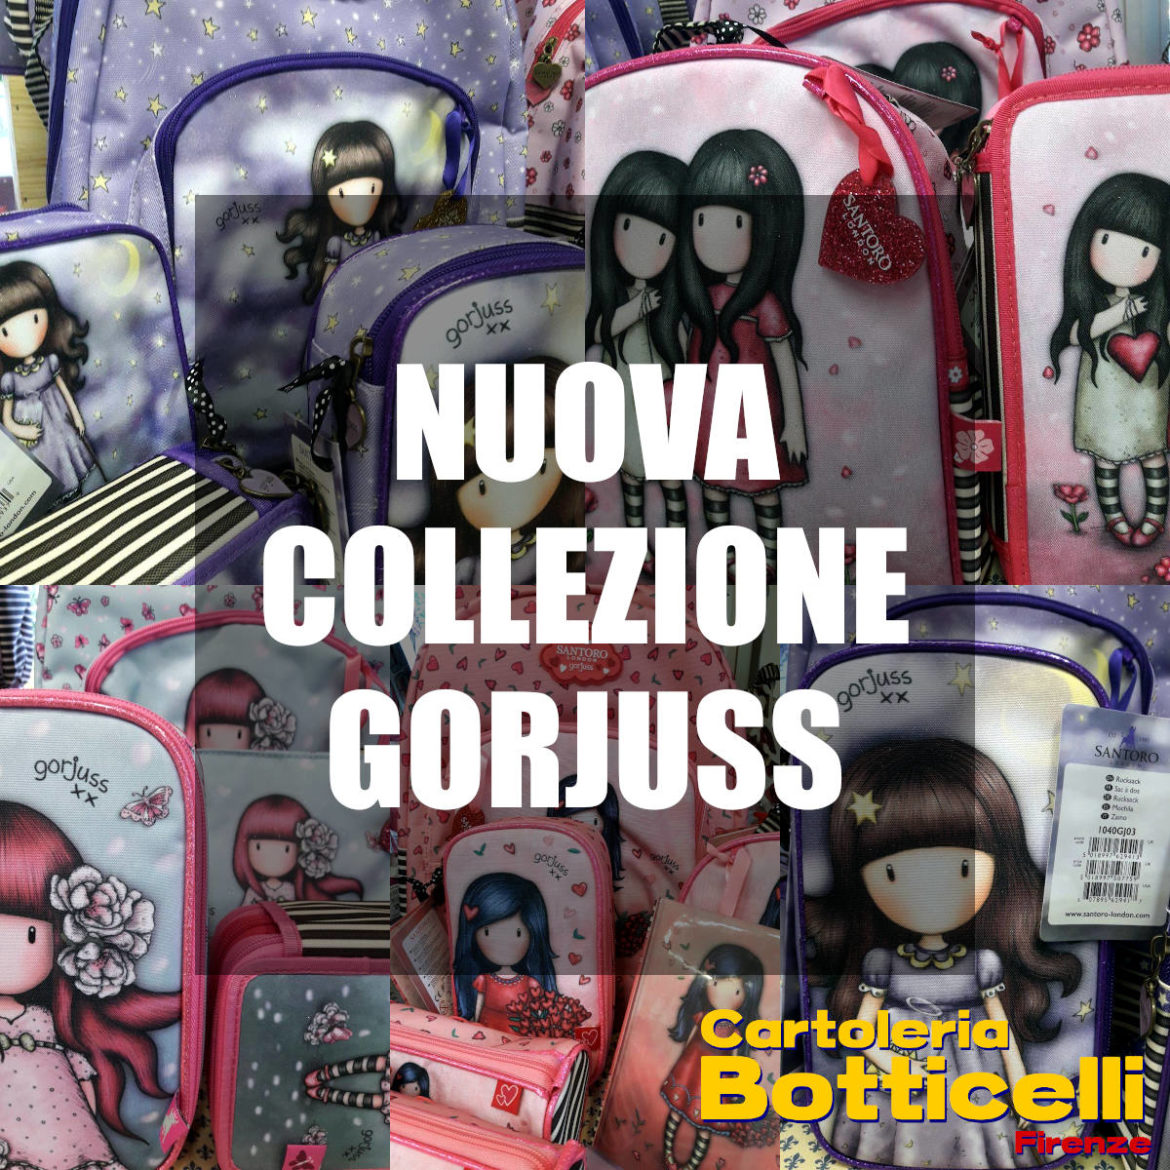 Nuova collezione Gorjuss da Cartoleria Botticelli Firenze